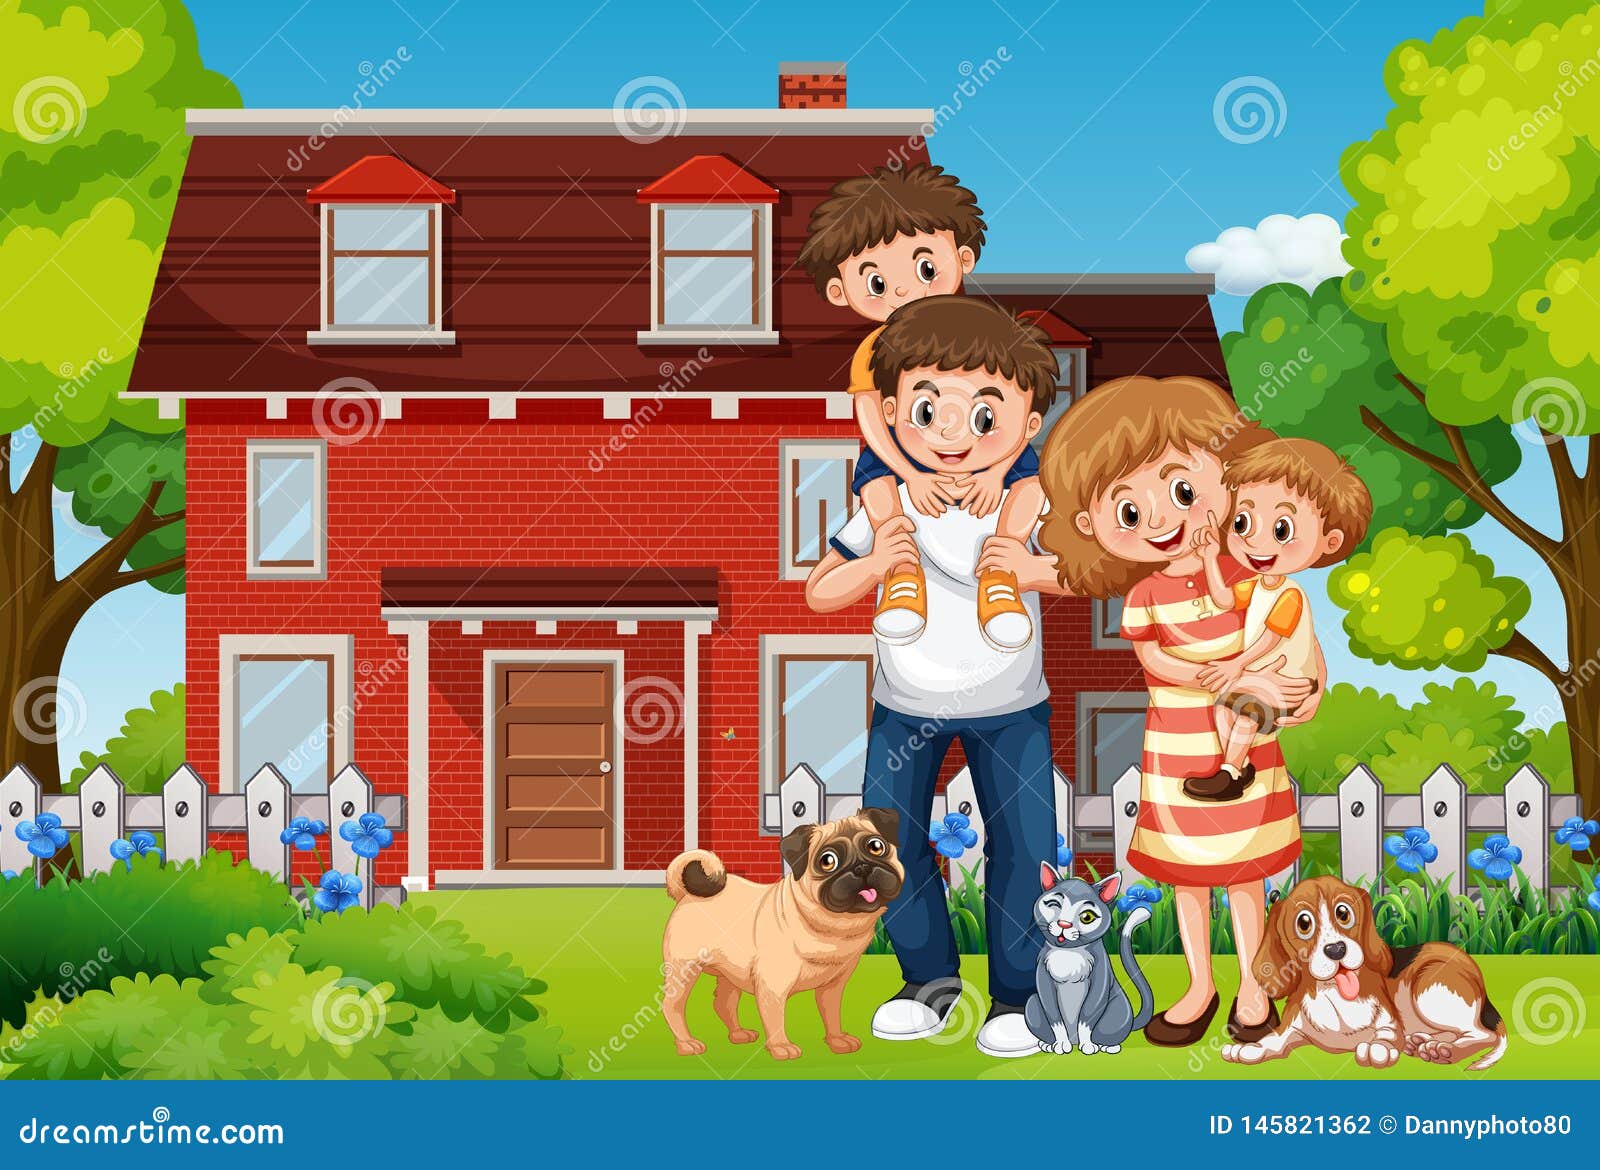 Дом и семья также в. Семья в домике. Мультяшная счастливая семья и дом. Мультяшный дом с семьей. Мои дом и семья.